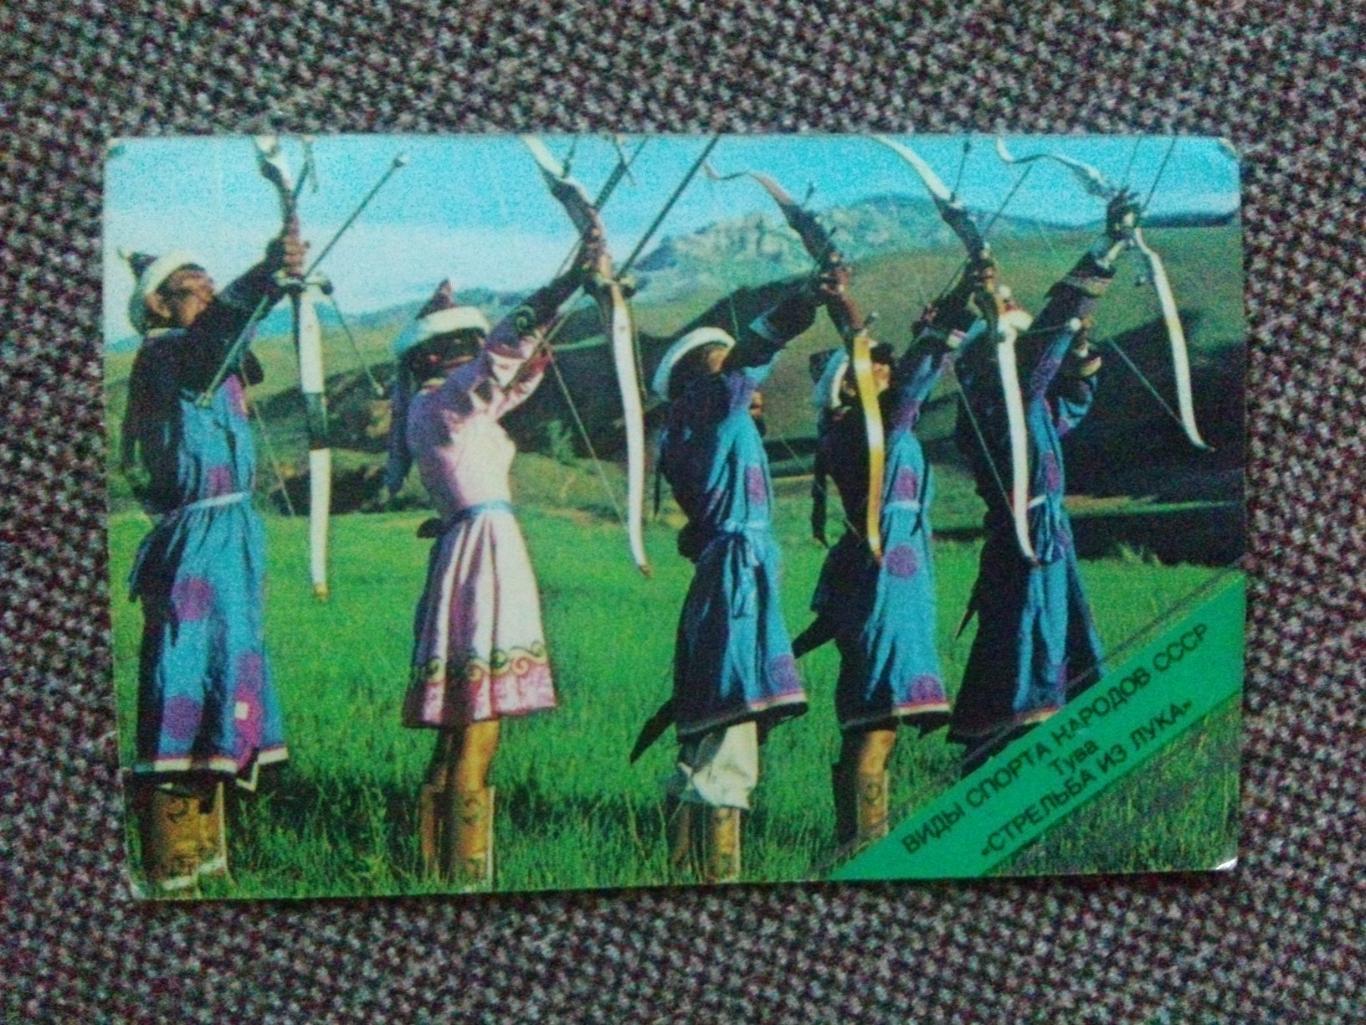 Карманный календарик : Национальные виды Стрельба из лука (Спорт) 1982 г.